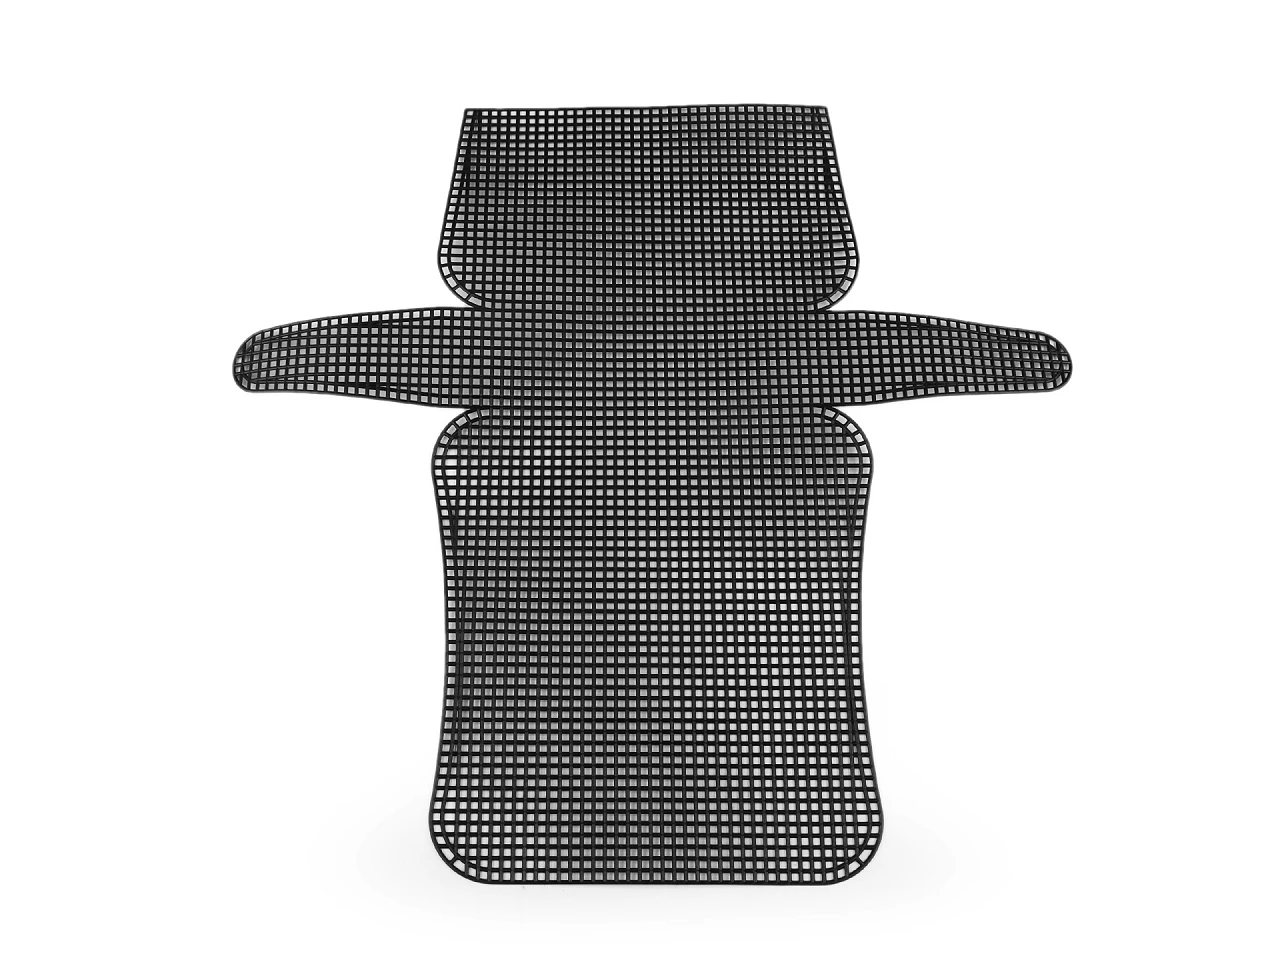 Műanyag kanava hímzés, táskakészítés - 18 x 9 x 4,5 cm - fekete 